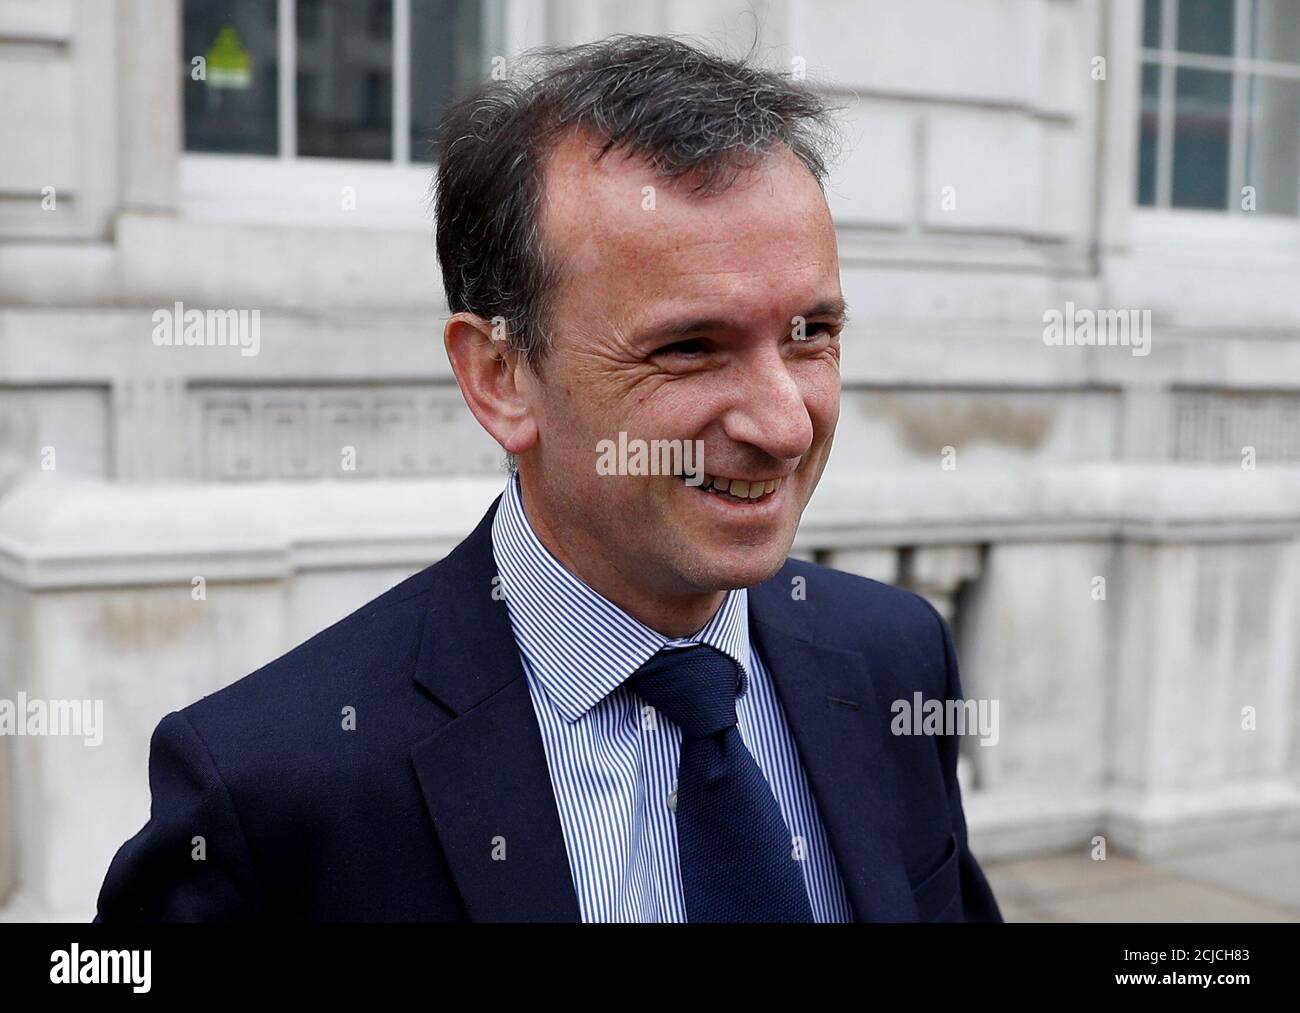 El Secretario de Estado de Gran Bretaña para Gales, Alun Cairns, es visto fuera de la Oficina del Gabinete mientras continúan las conversaciones sobre el Brexit, en Londres, Gran Bretaña, el 8 de abril de 2019. REUTERS/Peter Nicholls Foto de stock